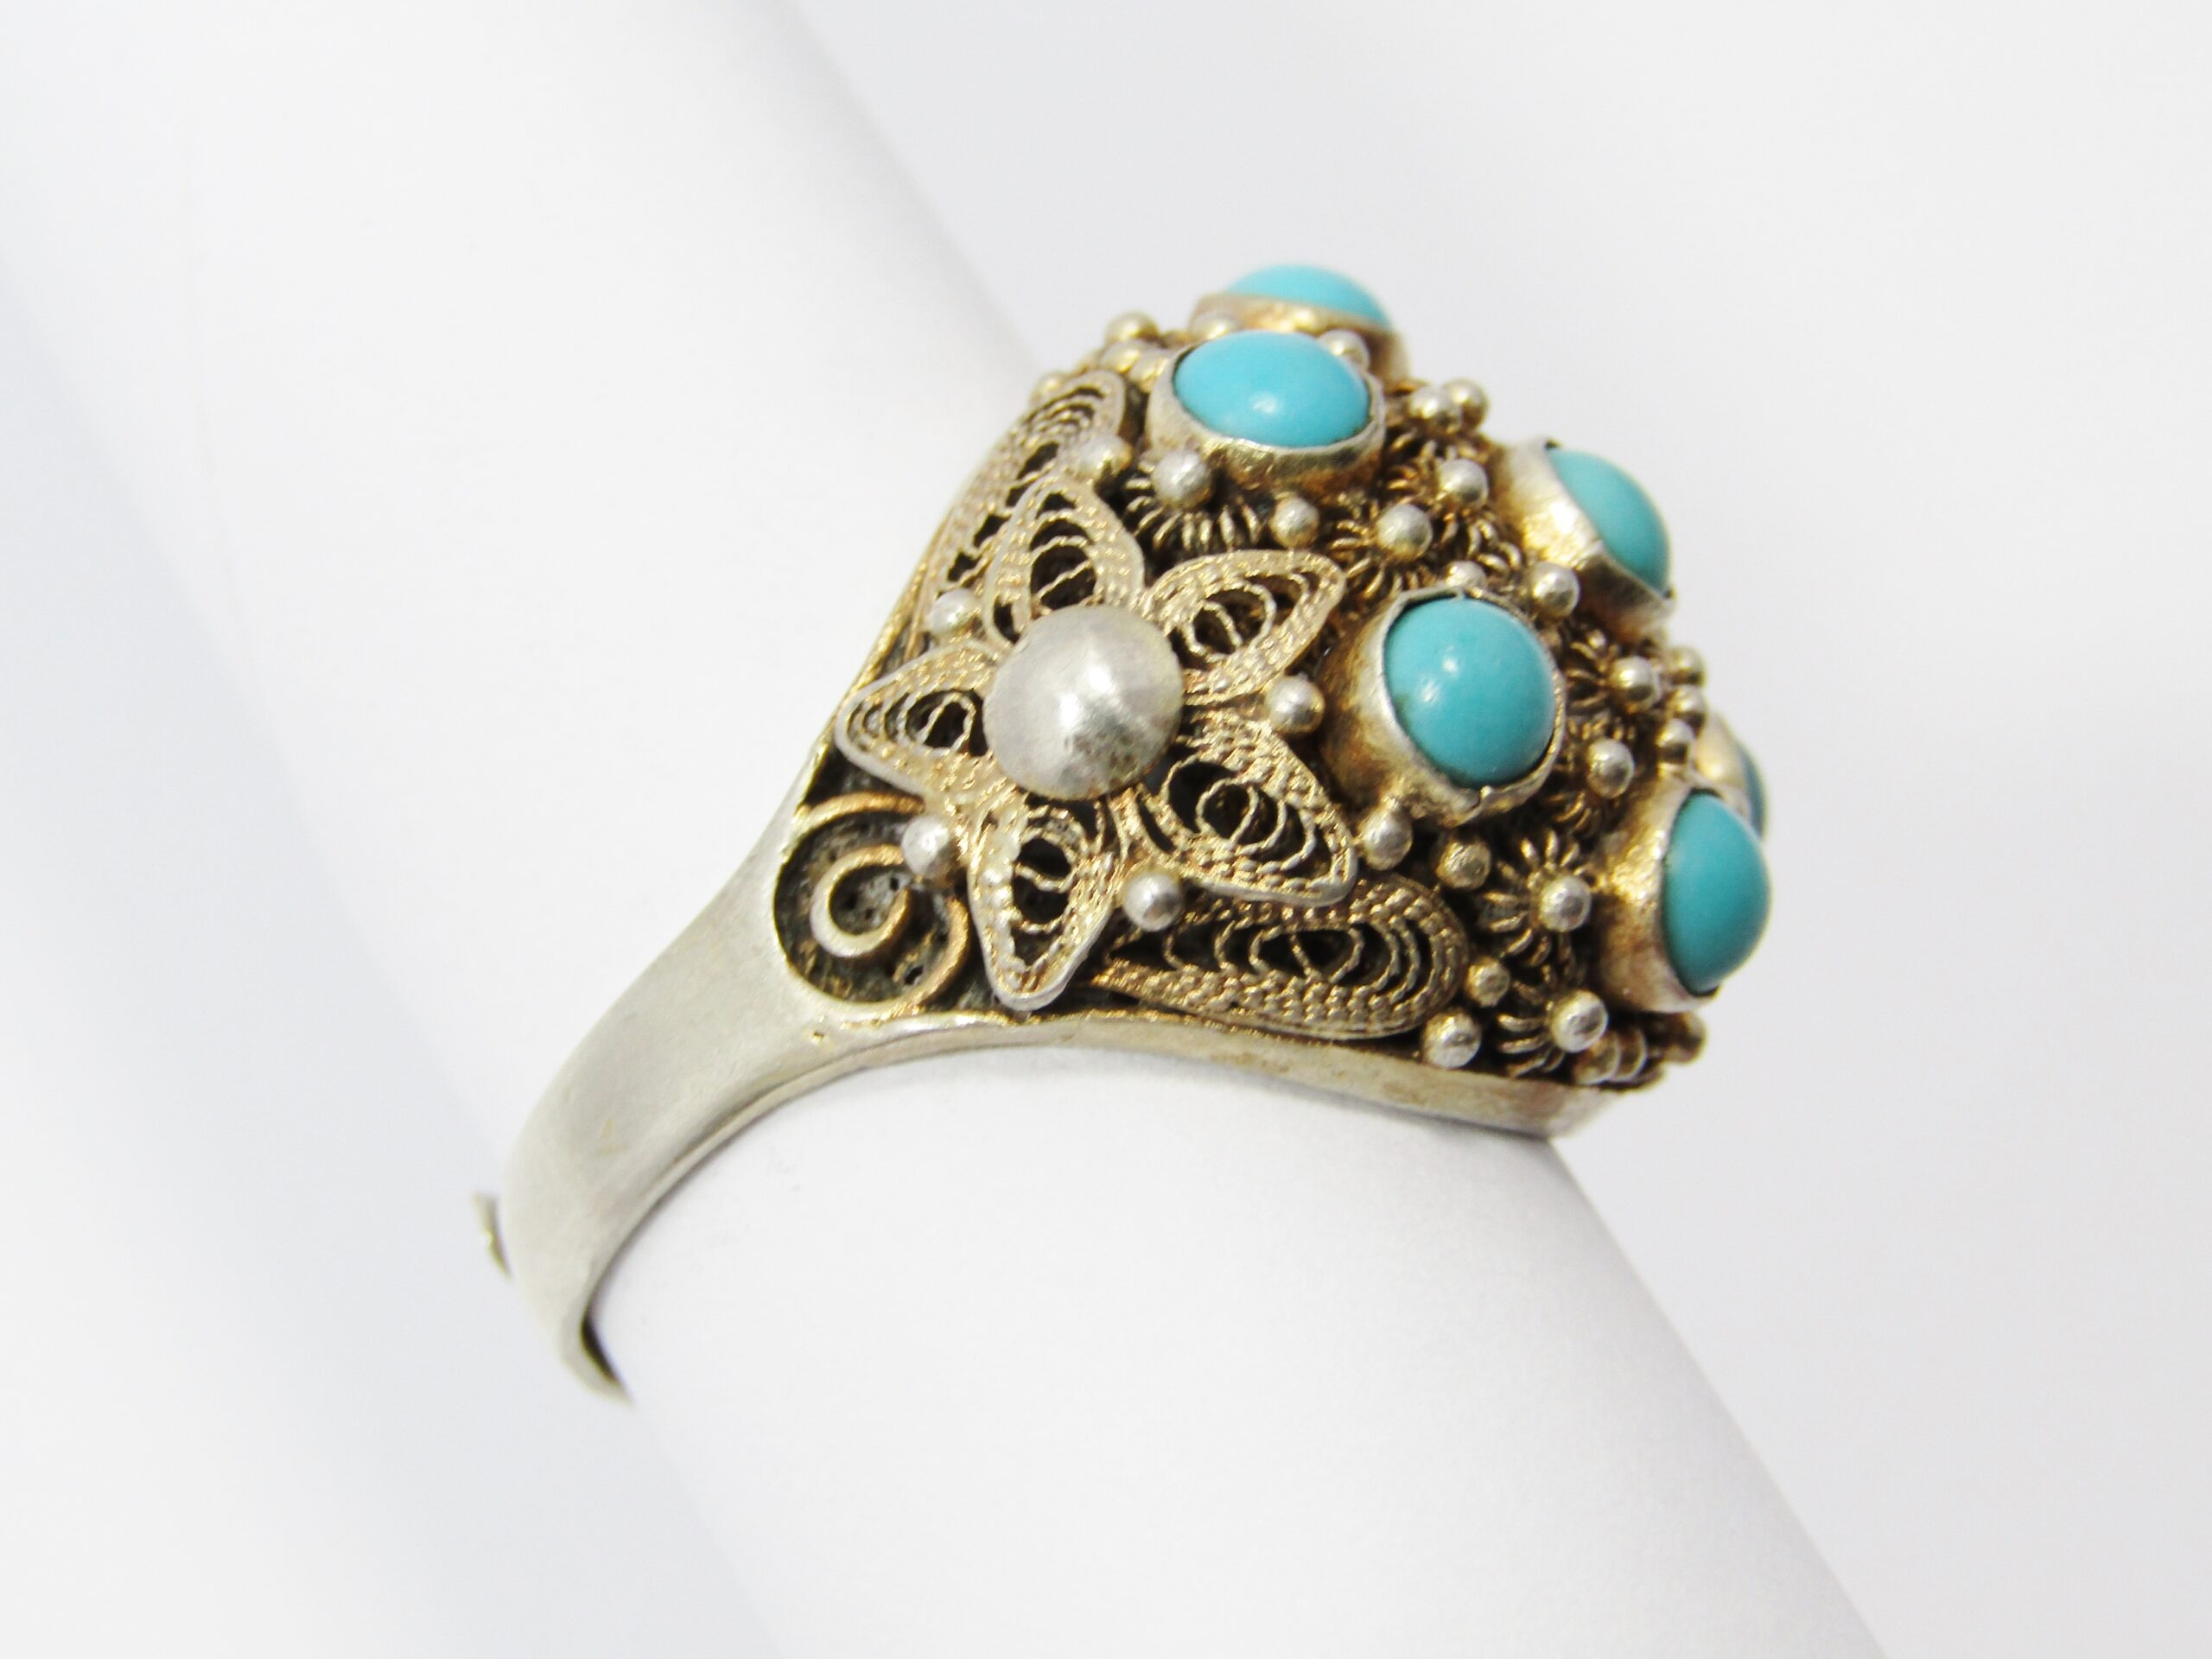 A Stunning Gold Gilt over Sterling Silver Vintage Design Ring